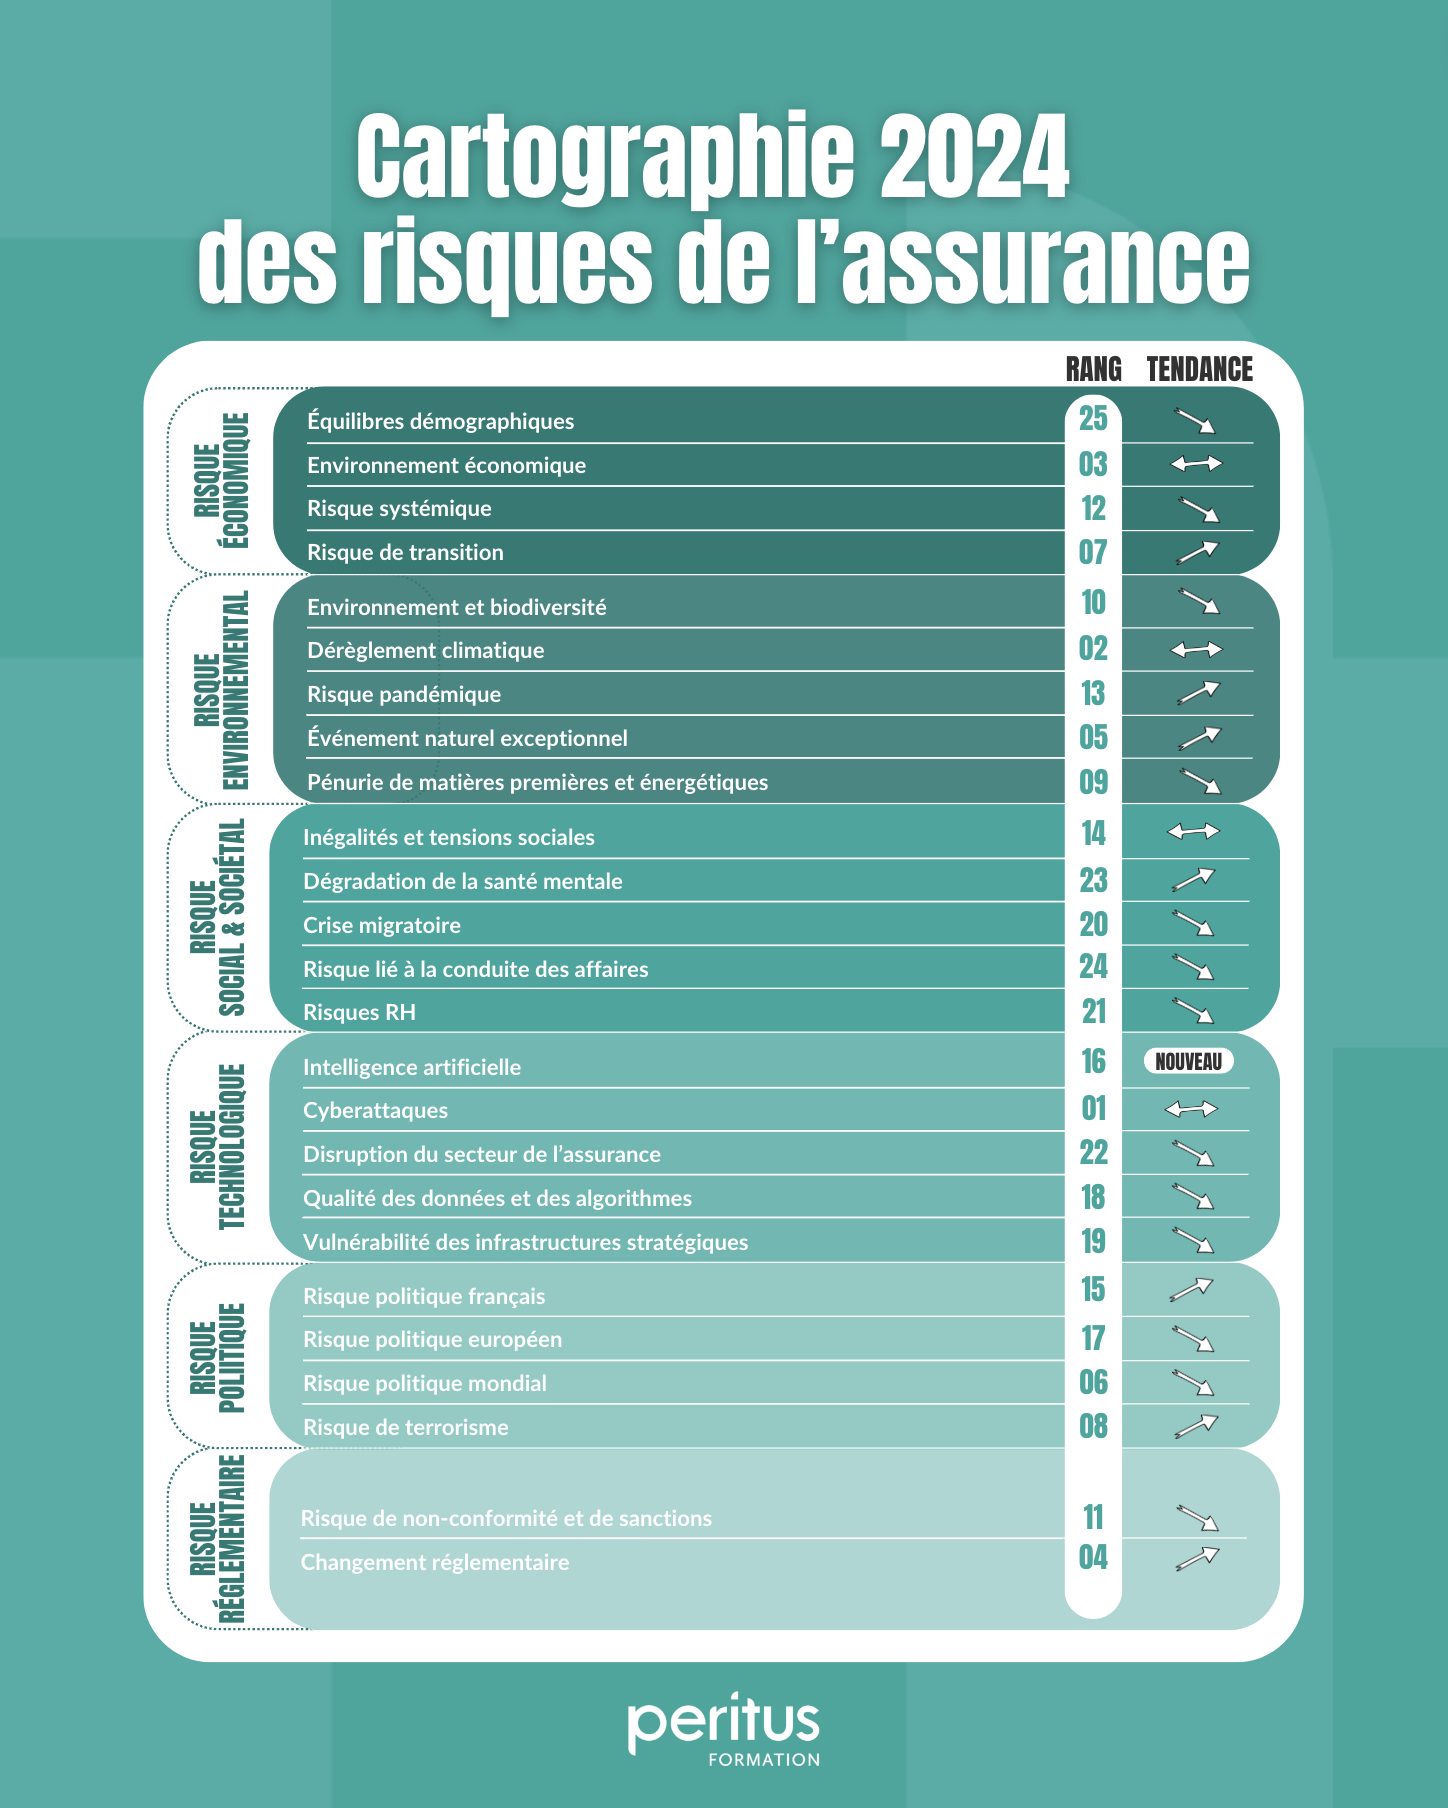 Cartographie France assureurs 2023 des risques de la profession d’assurance